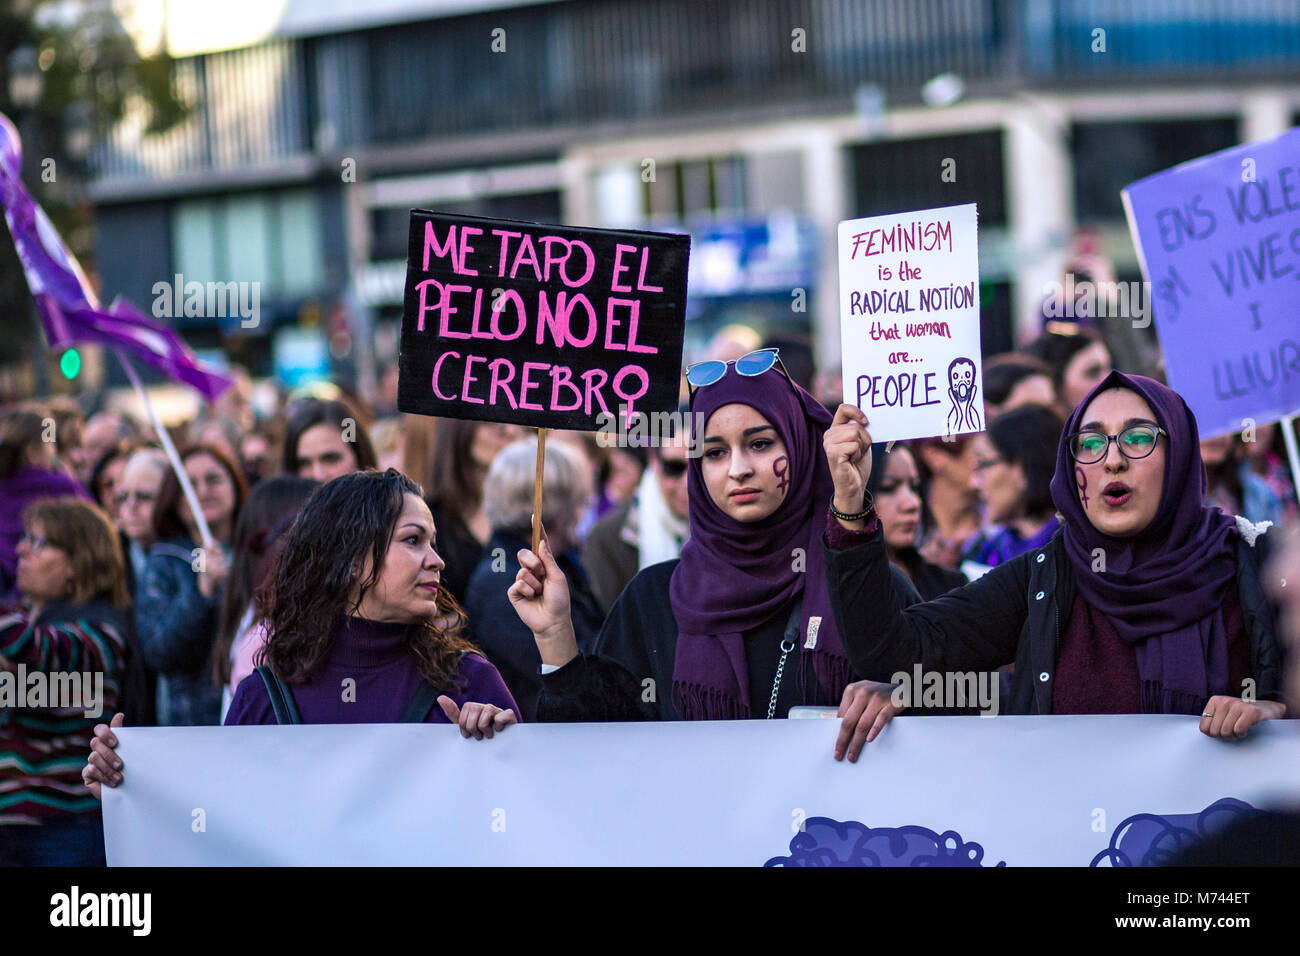 Valencai, Spanien. 8. März feministische Streik in Spanien Anspruch auf gleiche Bezahlung und gleiche Rechte für Frauen und Männer - Pro Feminismus Bewegung in Spanien für einen Generalstreik aufgerufen, keine Arbeit, kein Shop, keine Familie, für alle Arbeitnehmerinnen. "Wenn wir aufhören, die Welt nicht mehr" ist das Motto, Hommage an Island Frauen Streik 1975 erreicht 9 von 10 Frauen im Land zu stoppen. - Zeichen' ich mein Haar, nicht mein Gehirn" - Frauen an der Demonstration in Valencia mit Hijab als Zeichen für die Aufnahme von muslimischen Frauen Credit: Santiago vidal Vallejo/Alamy leben Nachrichten Stockfoto